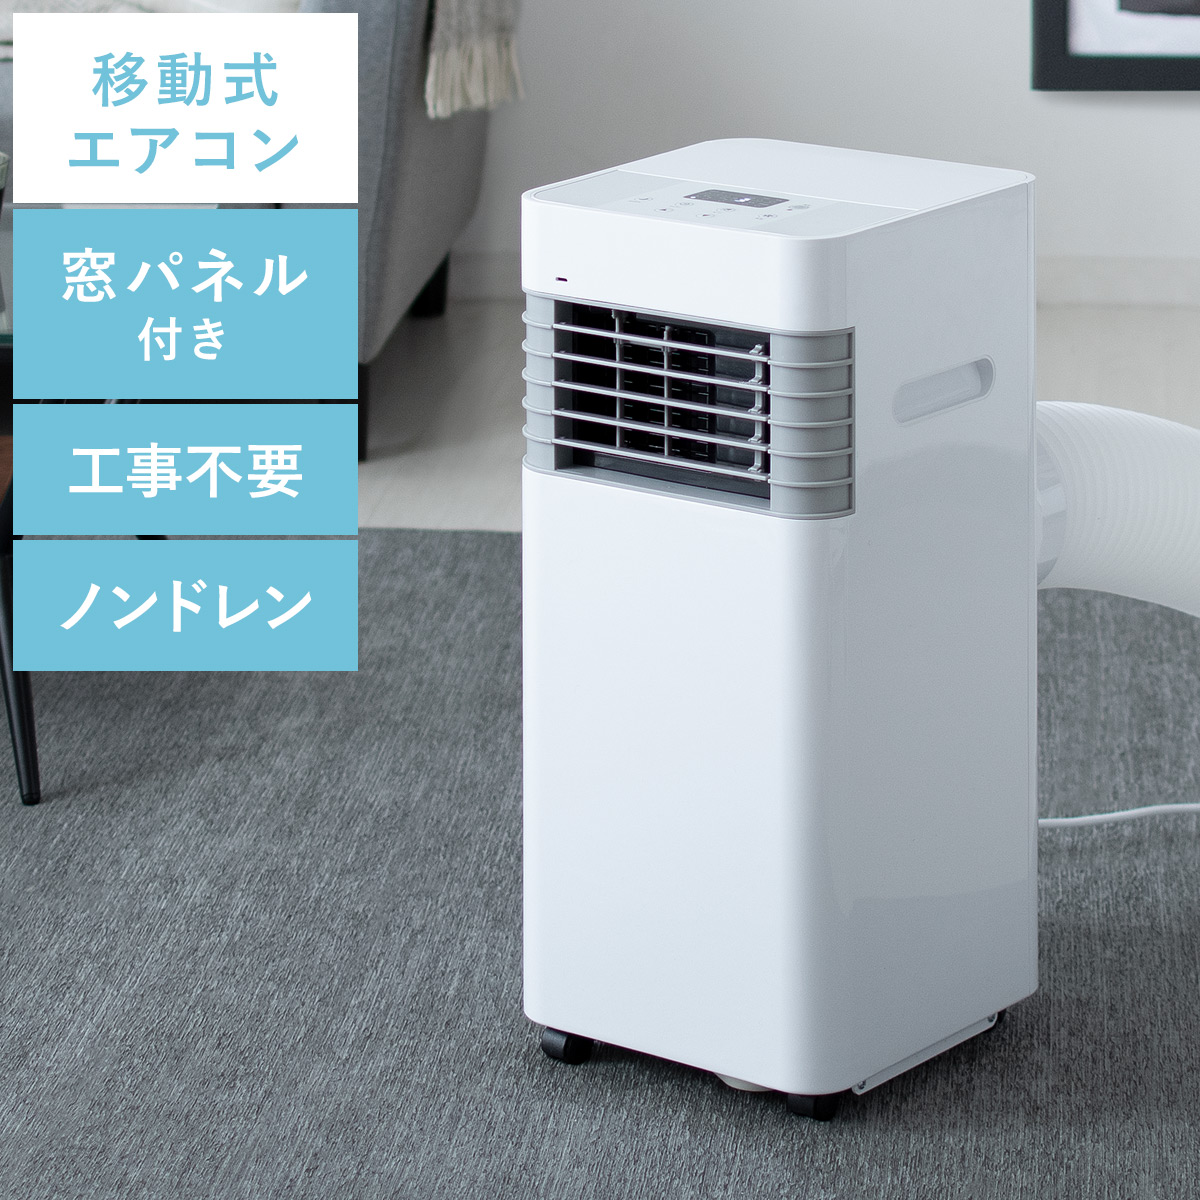 移動式エアコン スポットエアクーラー 【公式】 エア・リゾーム インテリア・家具通販